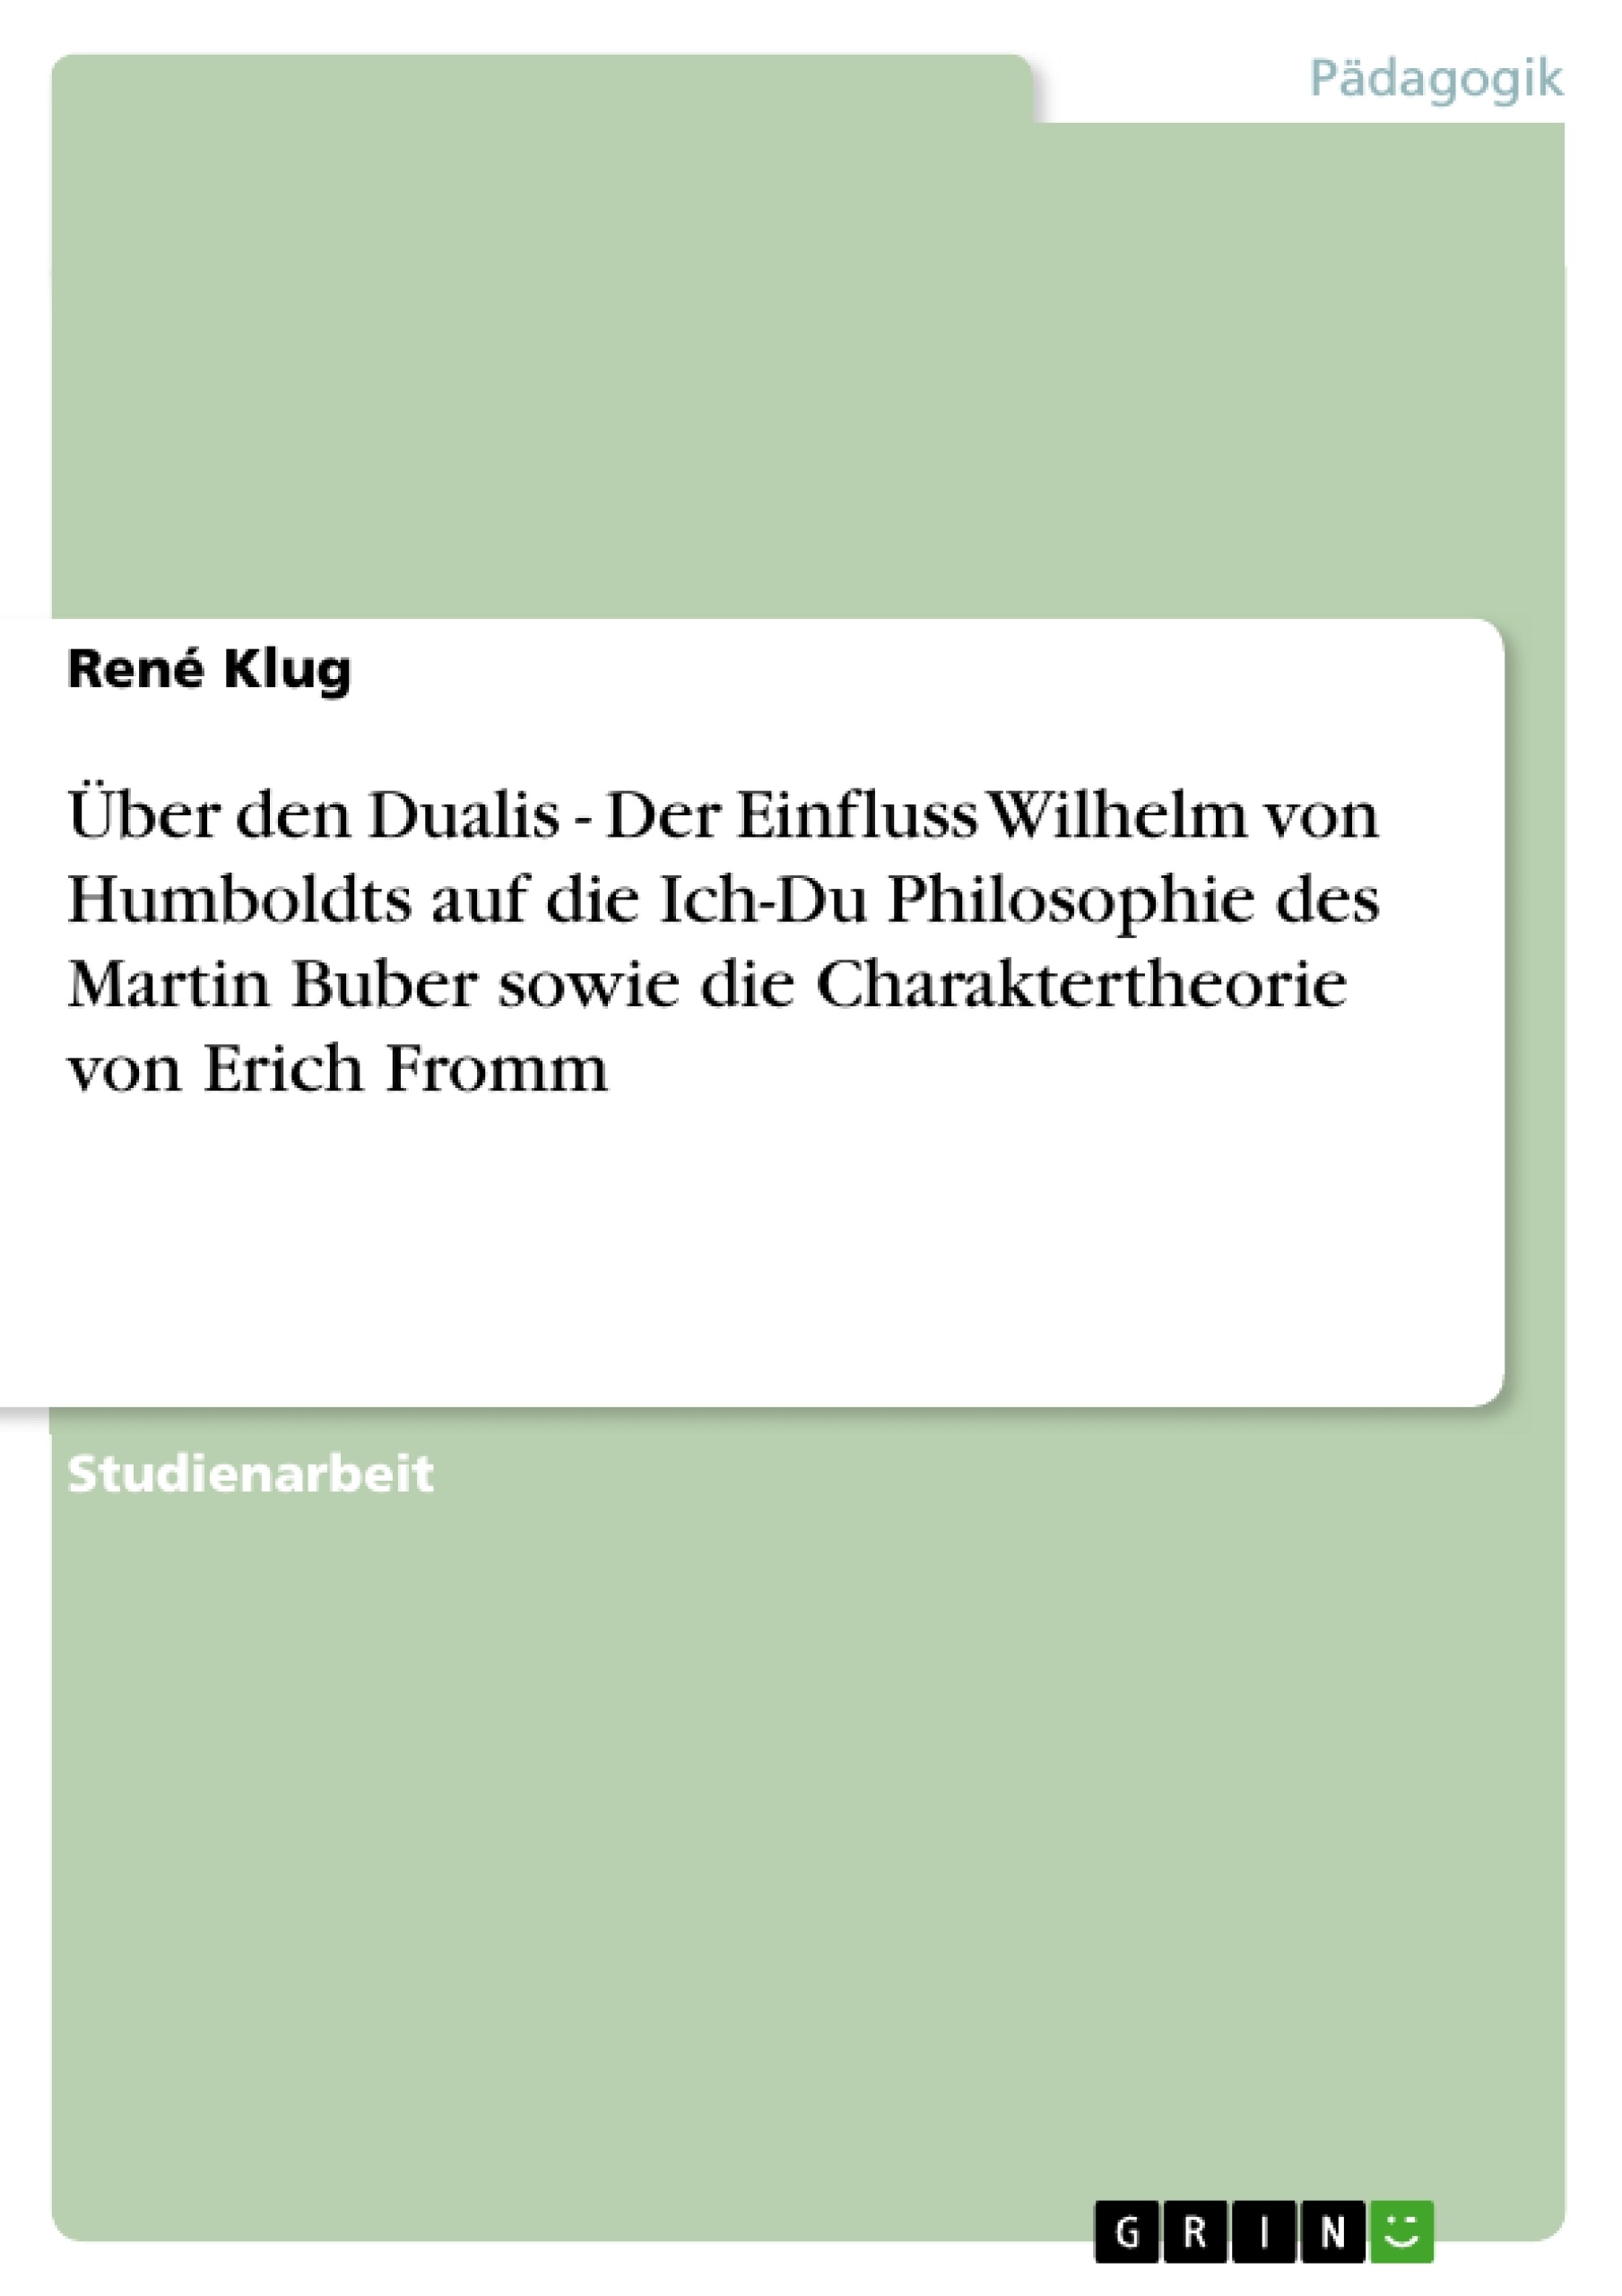 Titre: Über den Dualis - Der Einfluss Wilhelm von Humboldts auf die Ich-Du Philosophie des Martin Buber sowie die Charaktertheorie von Erich Fromm